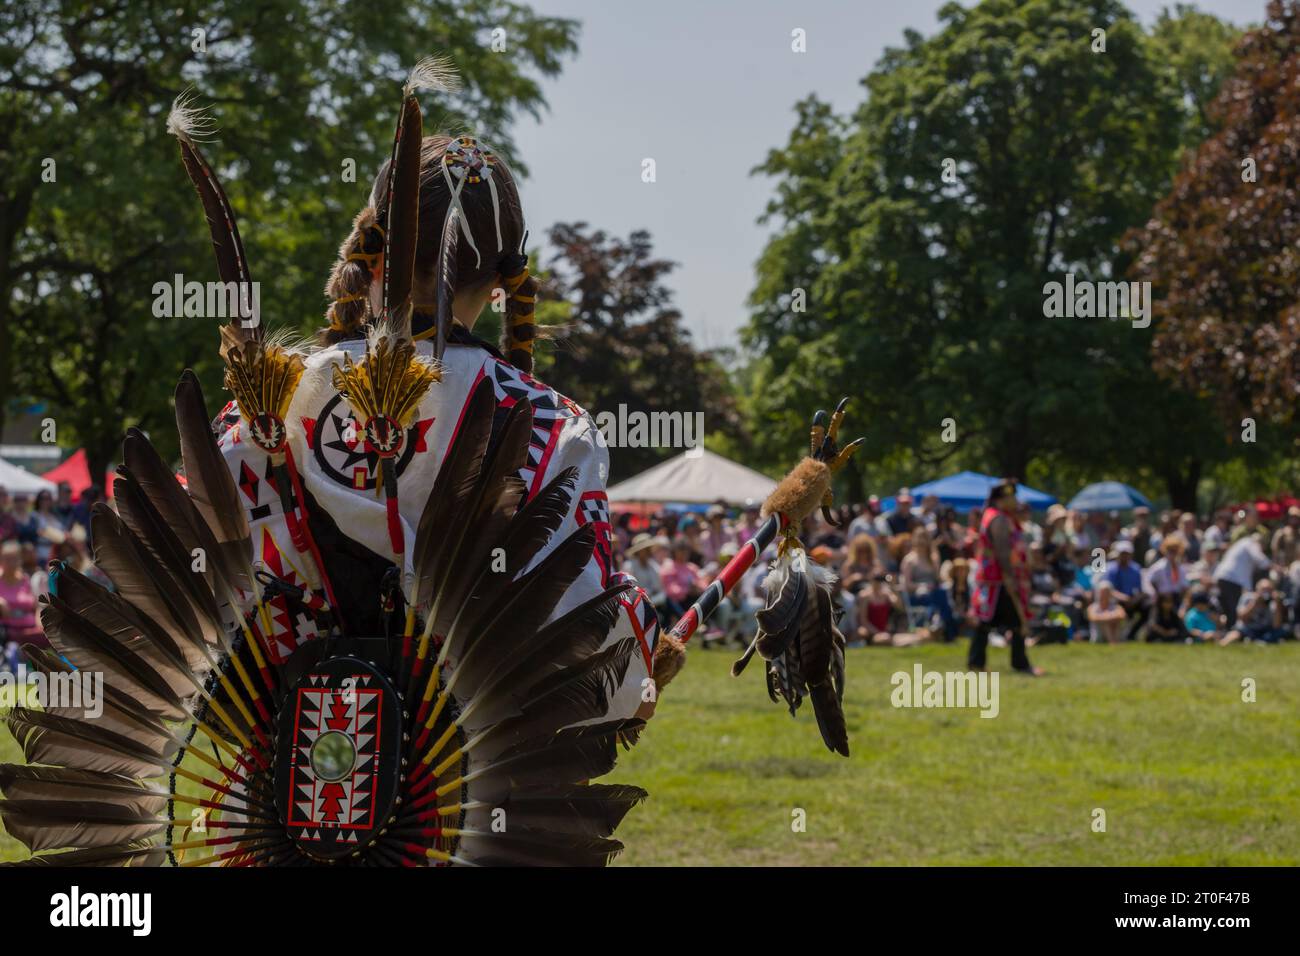 Festival de danse traditionnel Pow Wow. Une journée complète de danse, de tambours et de spectacles. premières nations, culture indigène, danseurs traditionnels du canada Banque D'Images